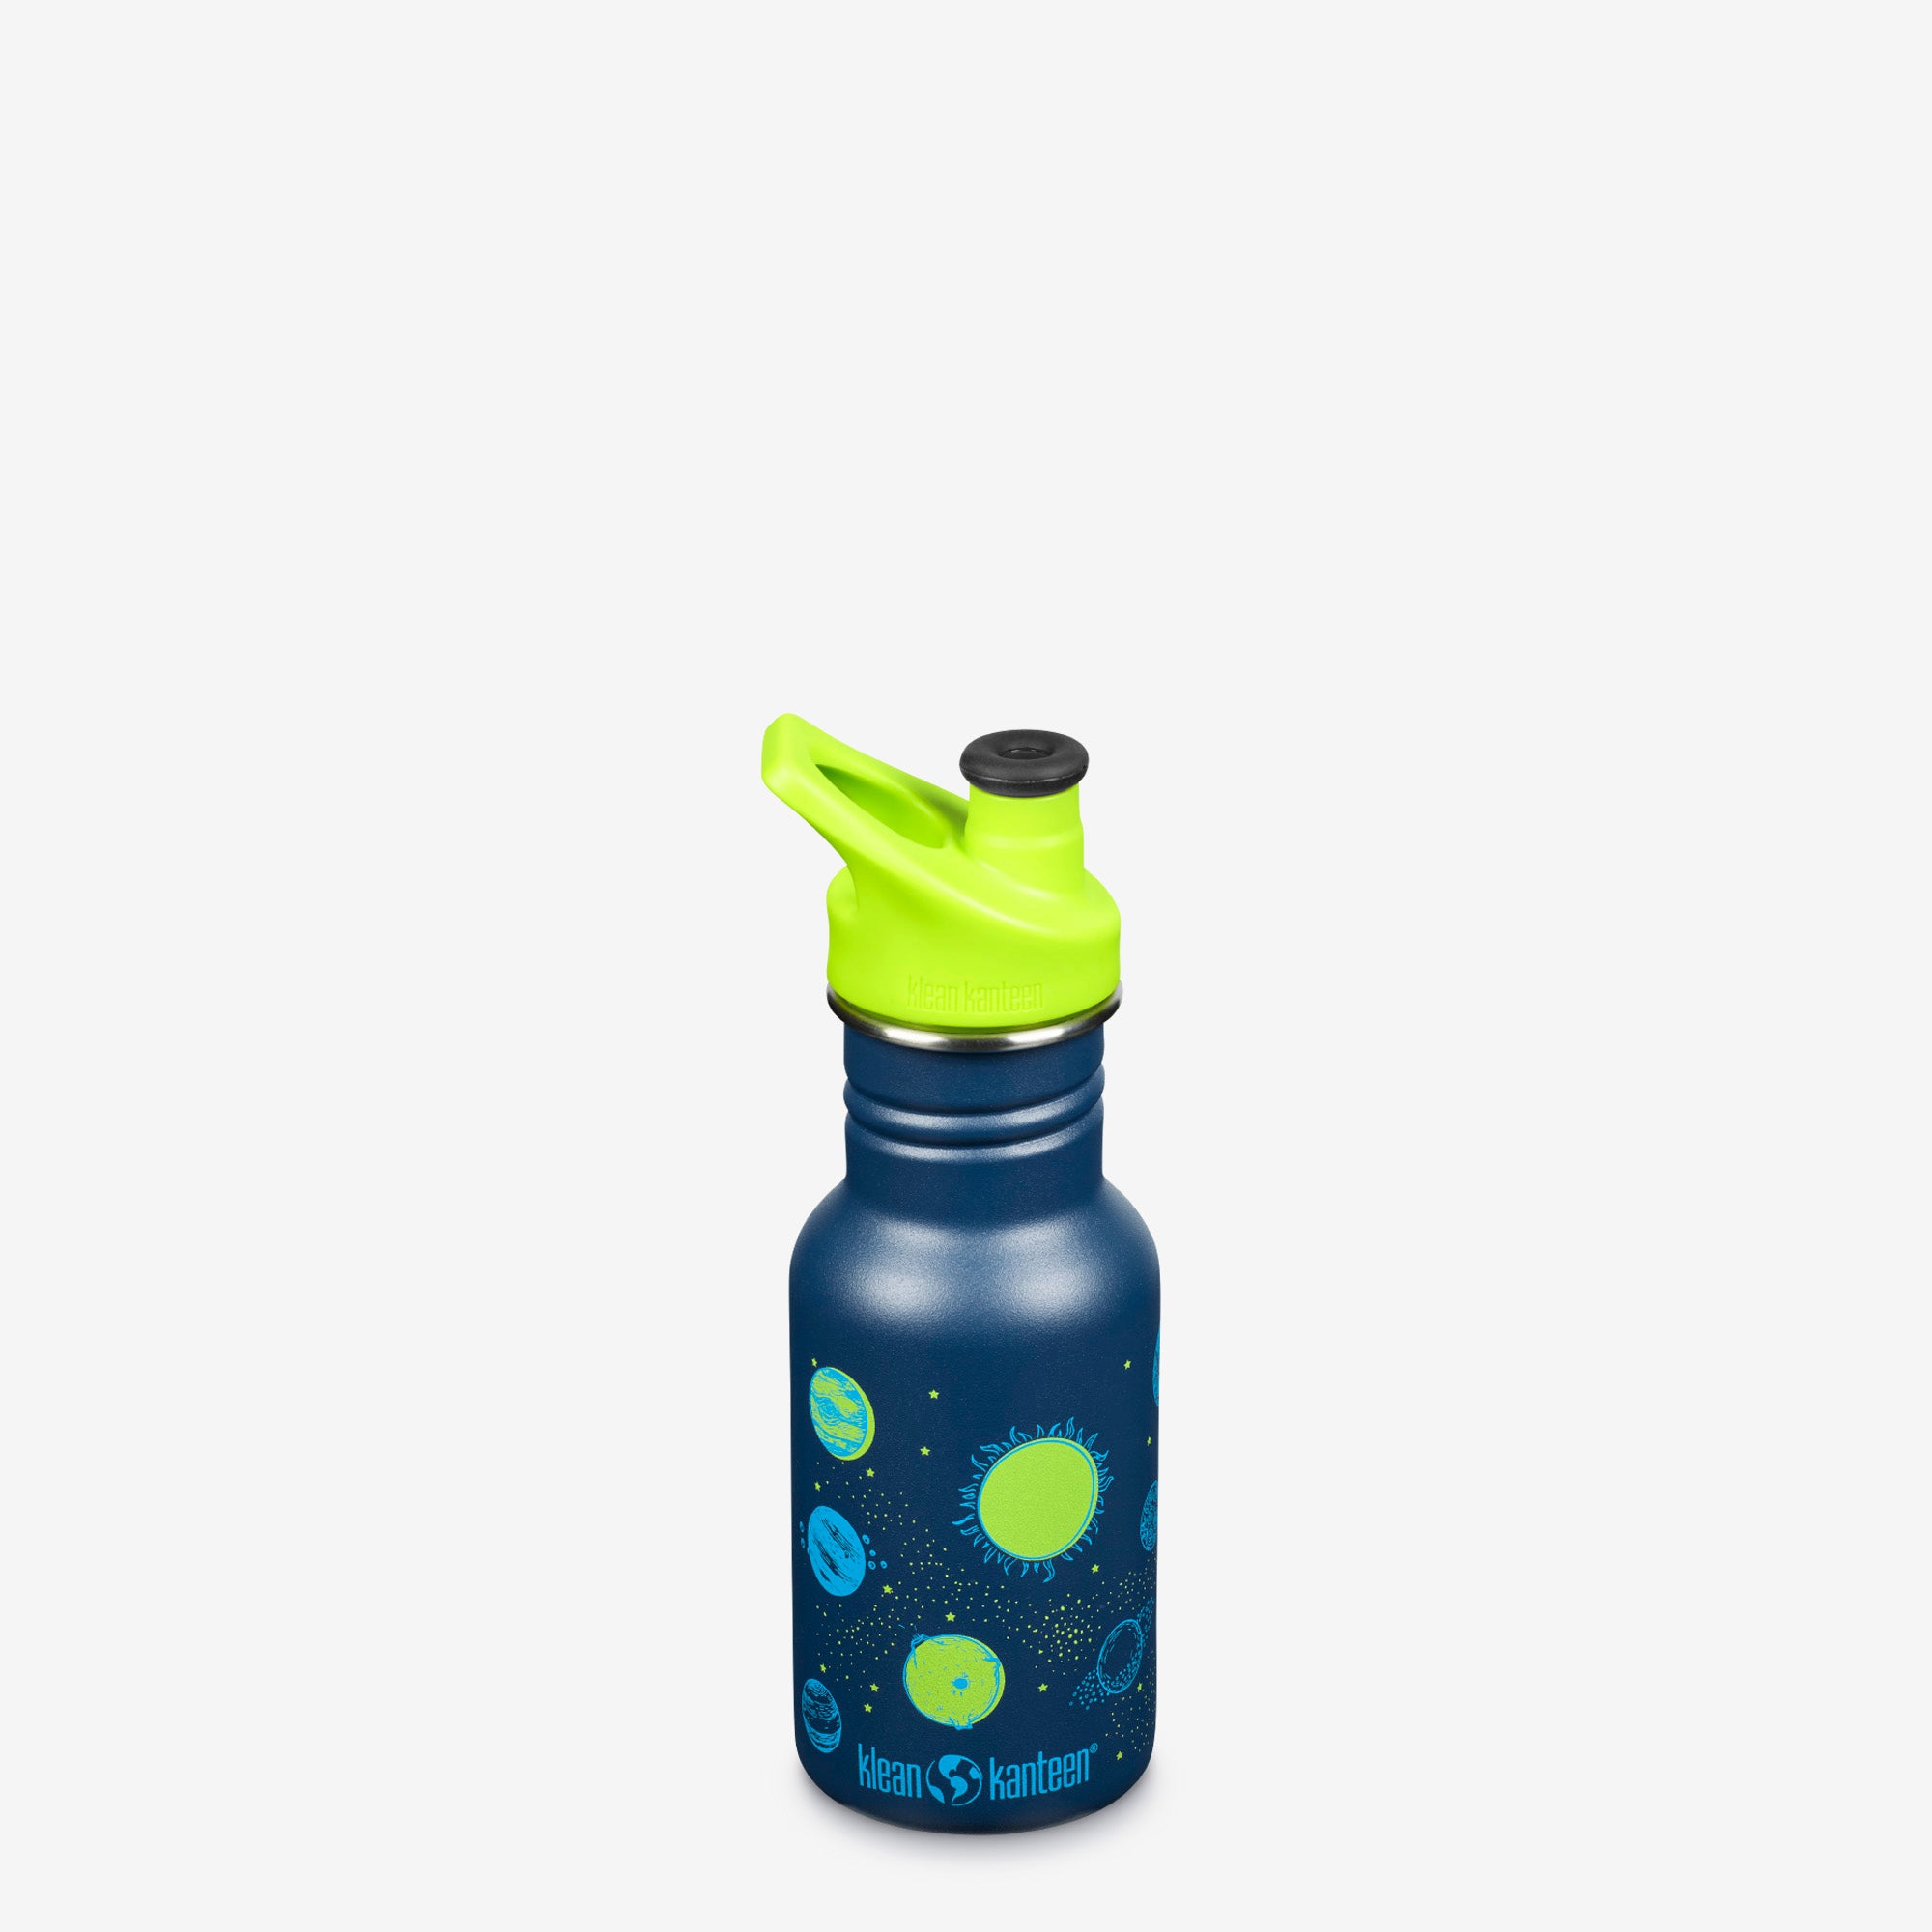 Kids' Water Bottles